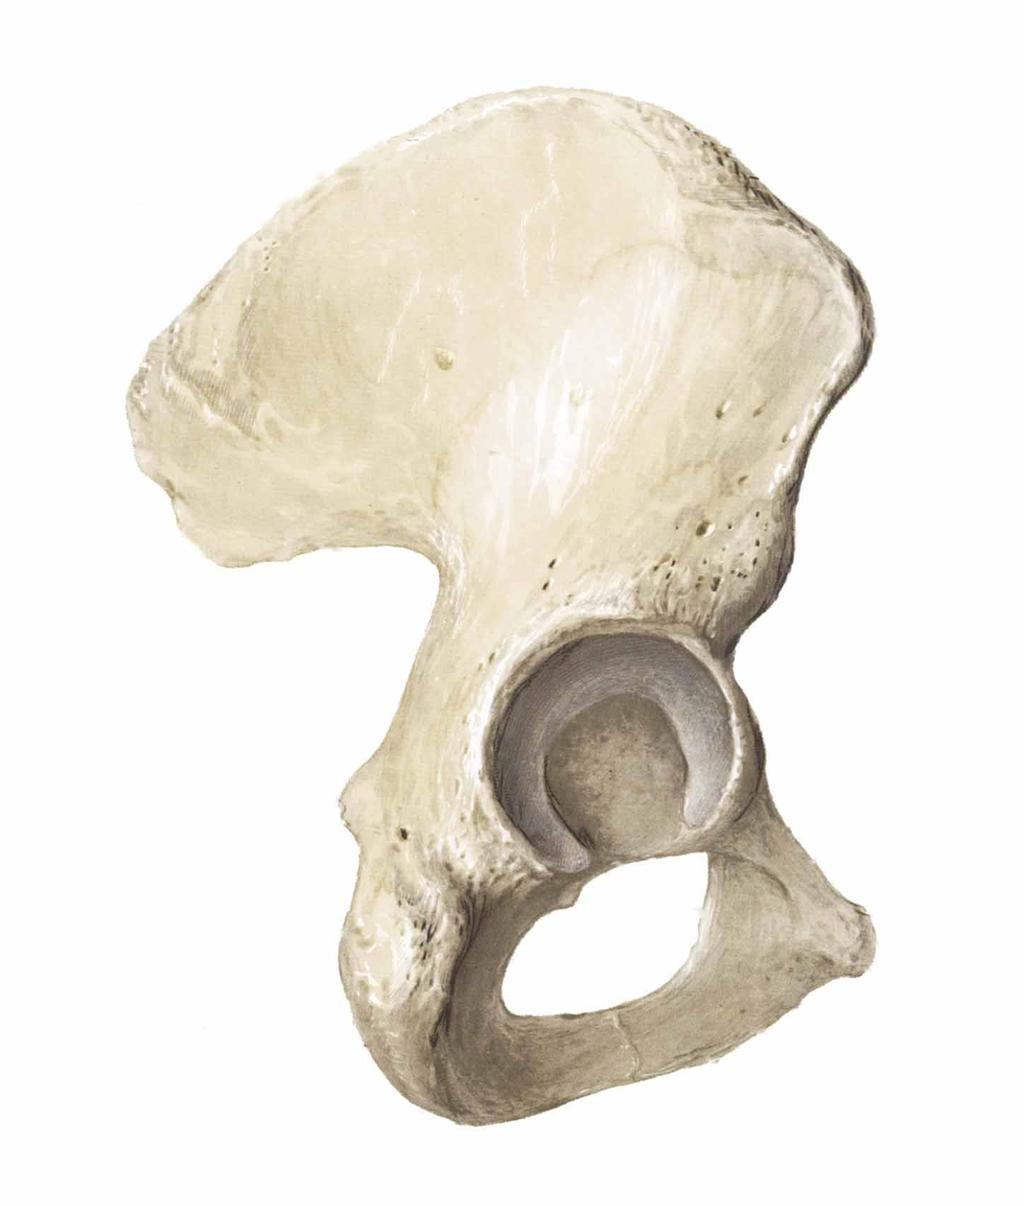 3. Pelvic Girdle Made up of 3 bones fused together: ilium, ischium and pubis.